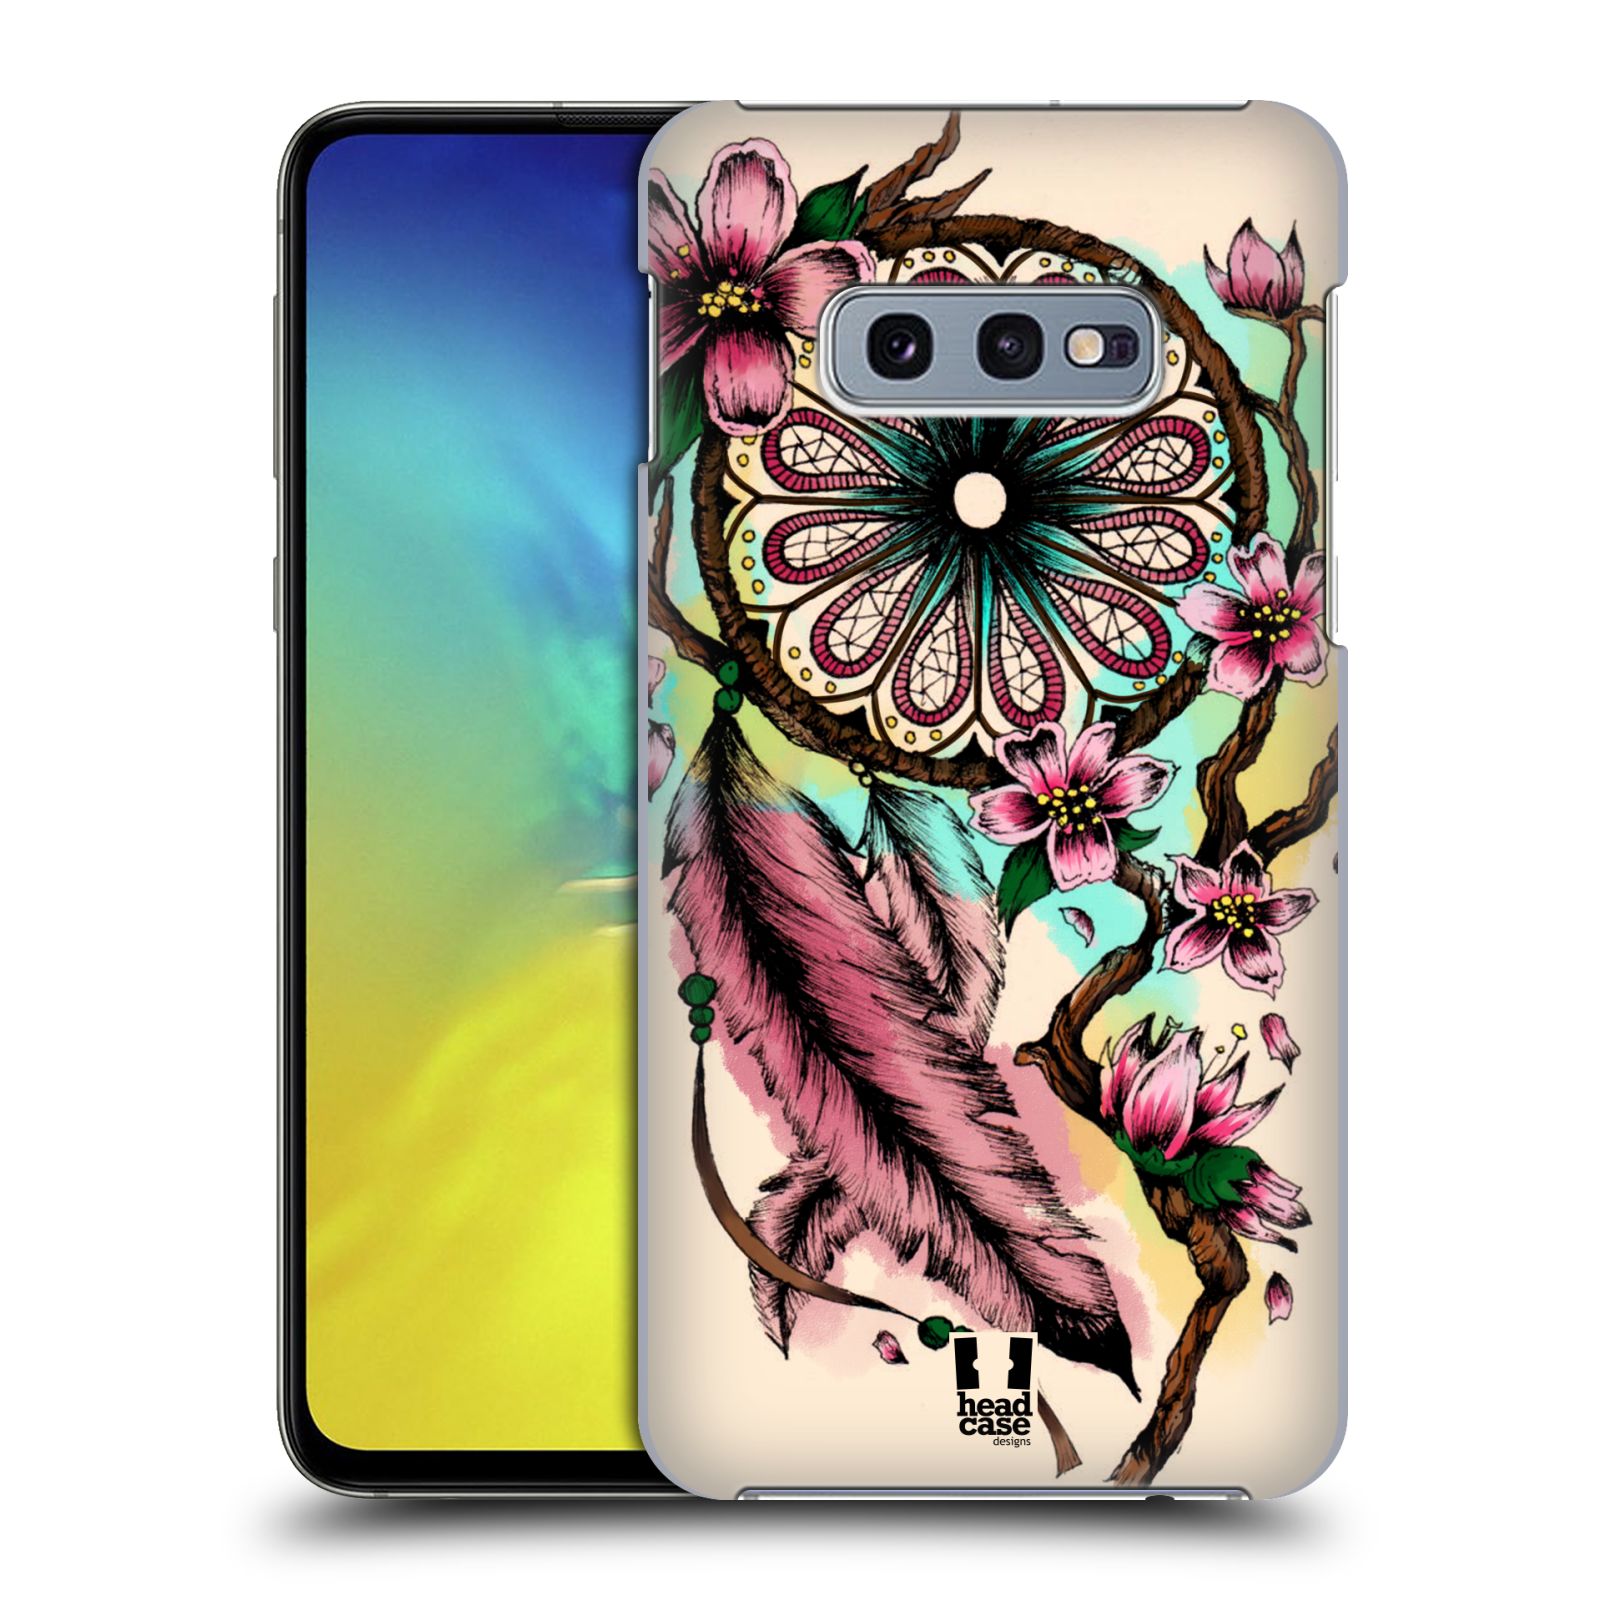 Pouzdro na mobil Samsung Galaxy S10e - HEAD CASE - vzor Květy lapač snů růžová